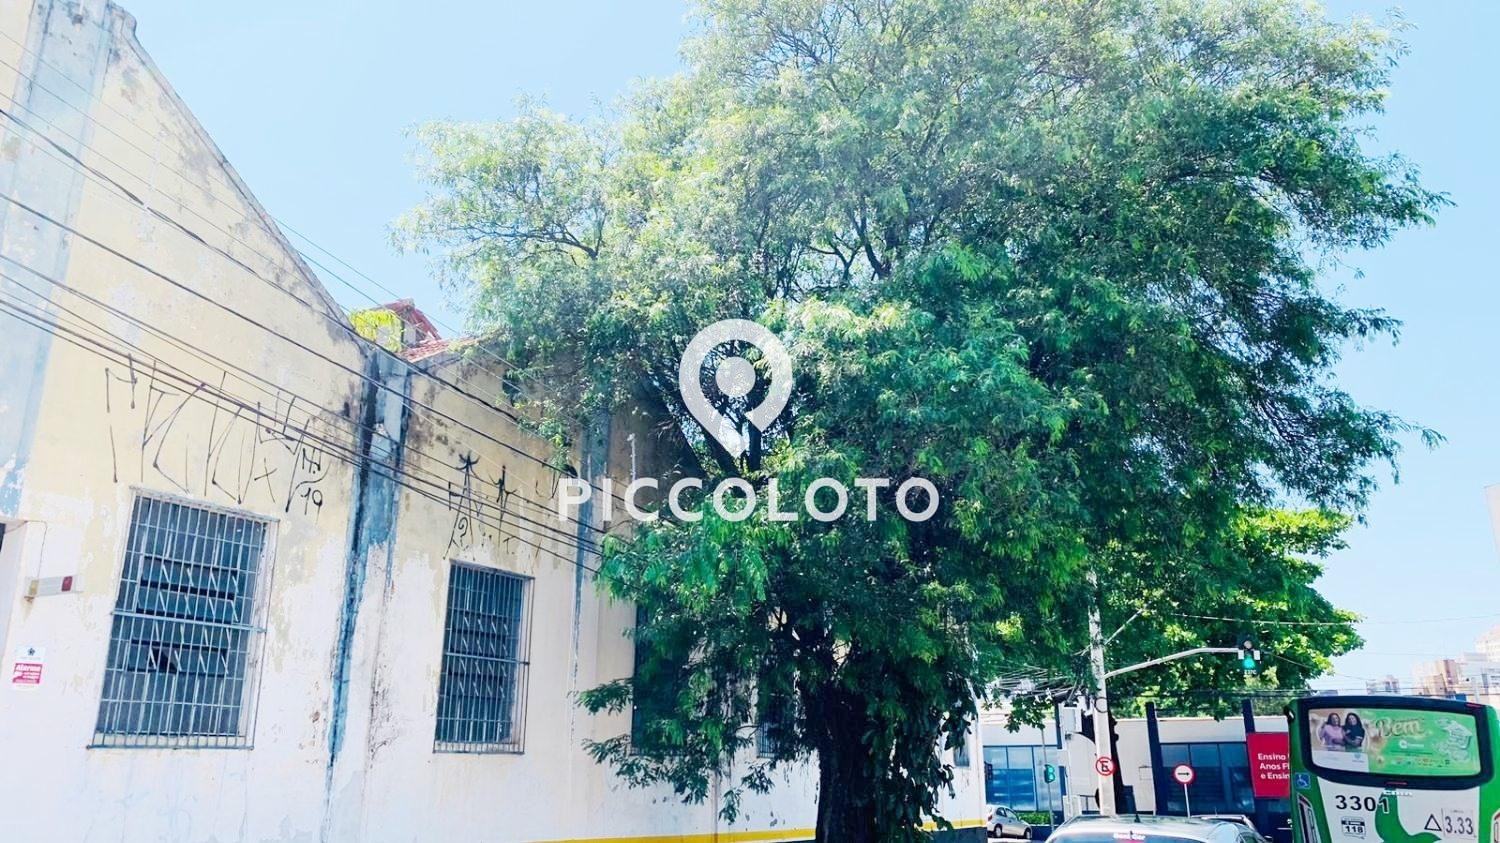 Piccoloto -Terreno à venda no Jardim Guanabara em Campinas